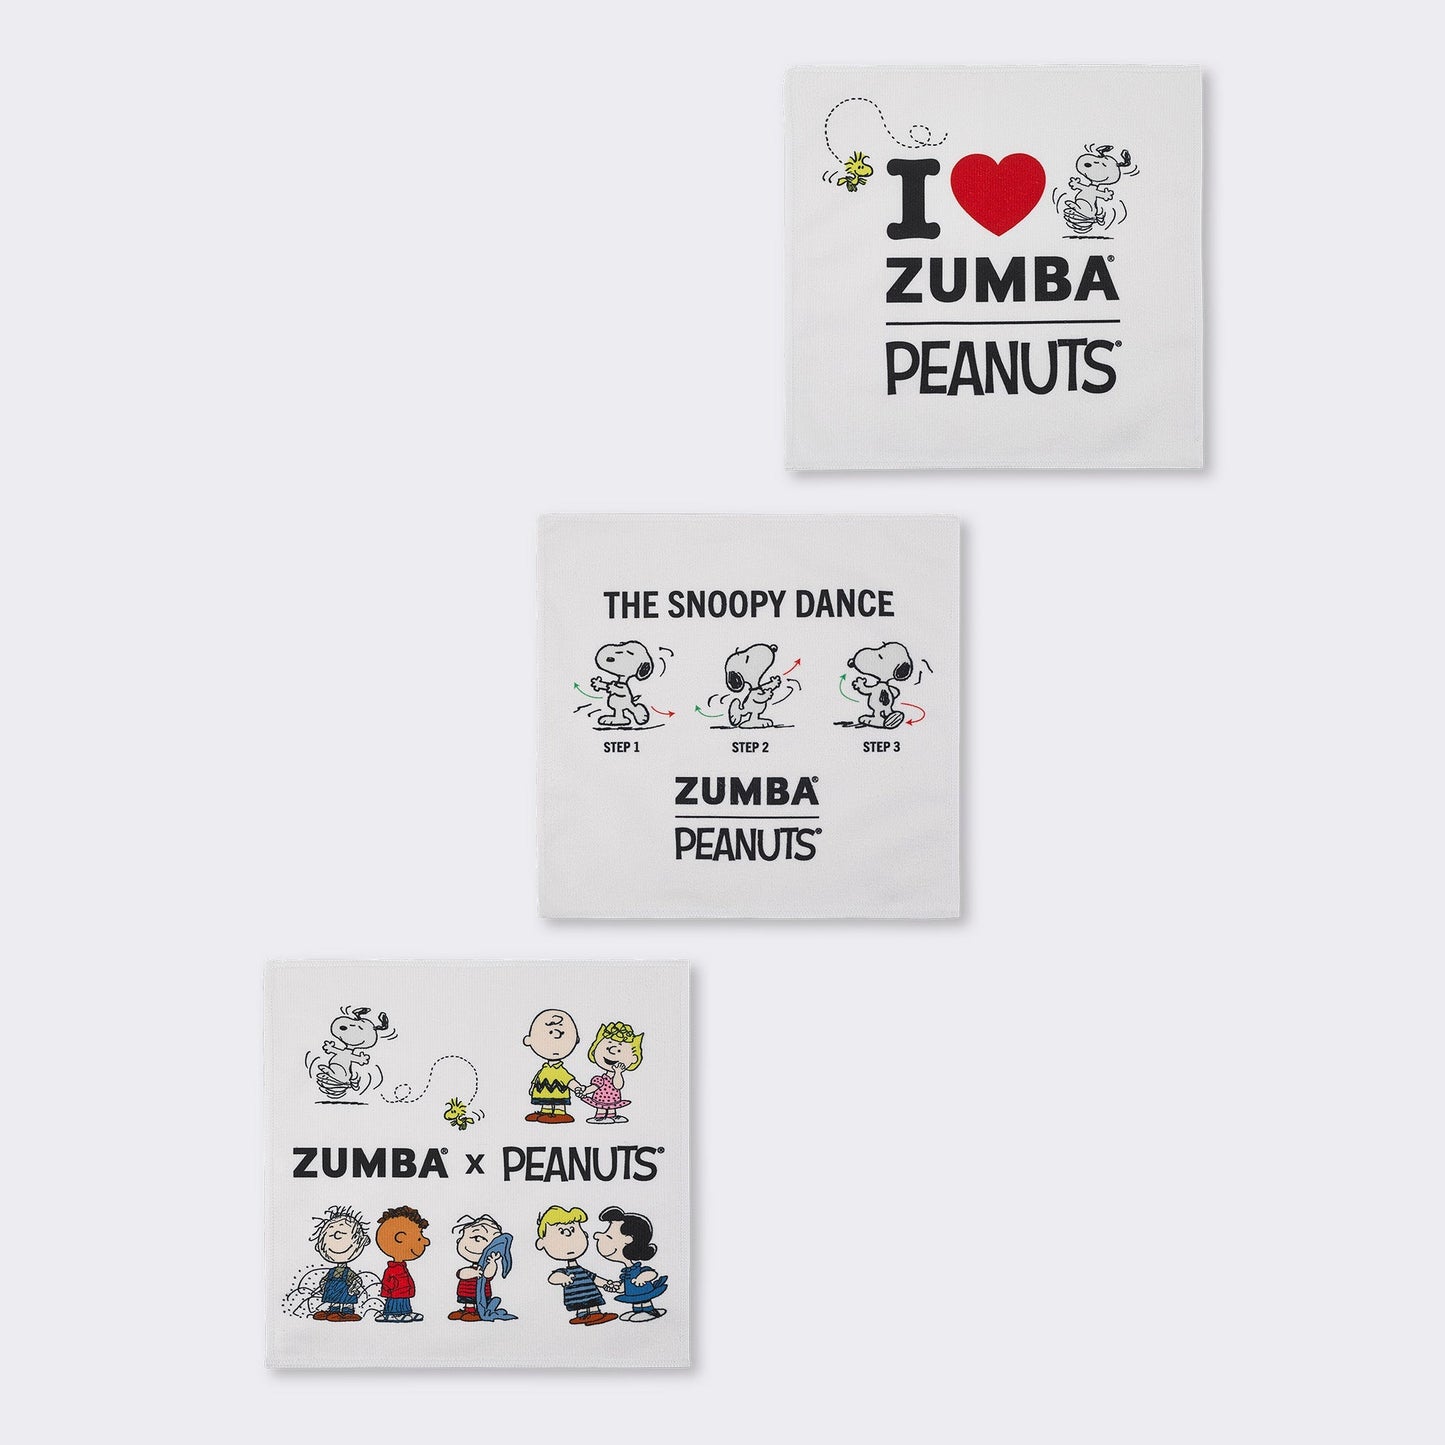 Zumba X Peanuts Small Towel